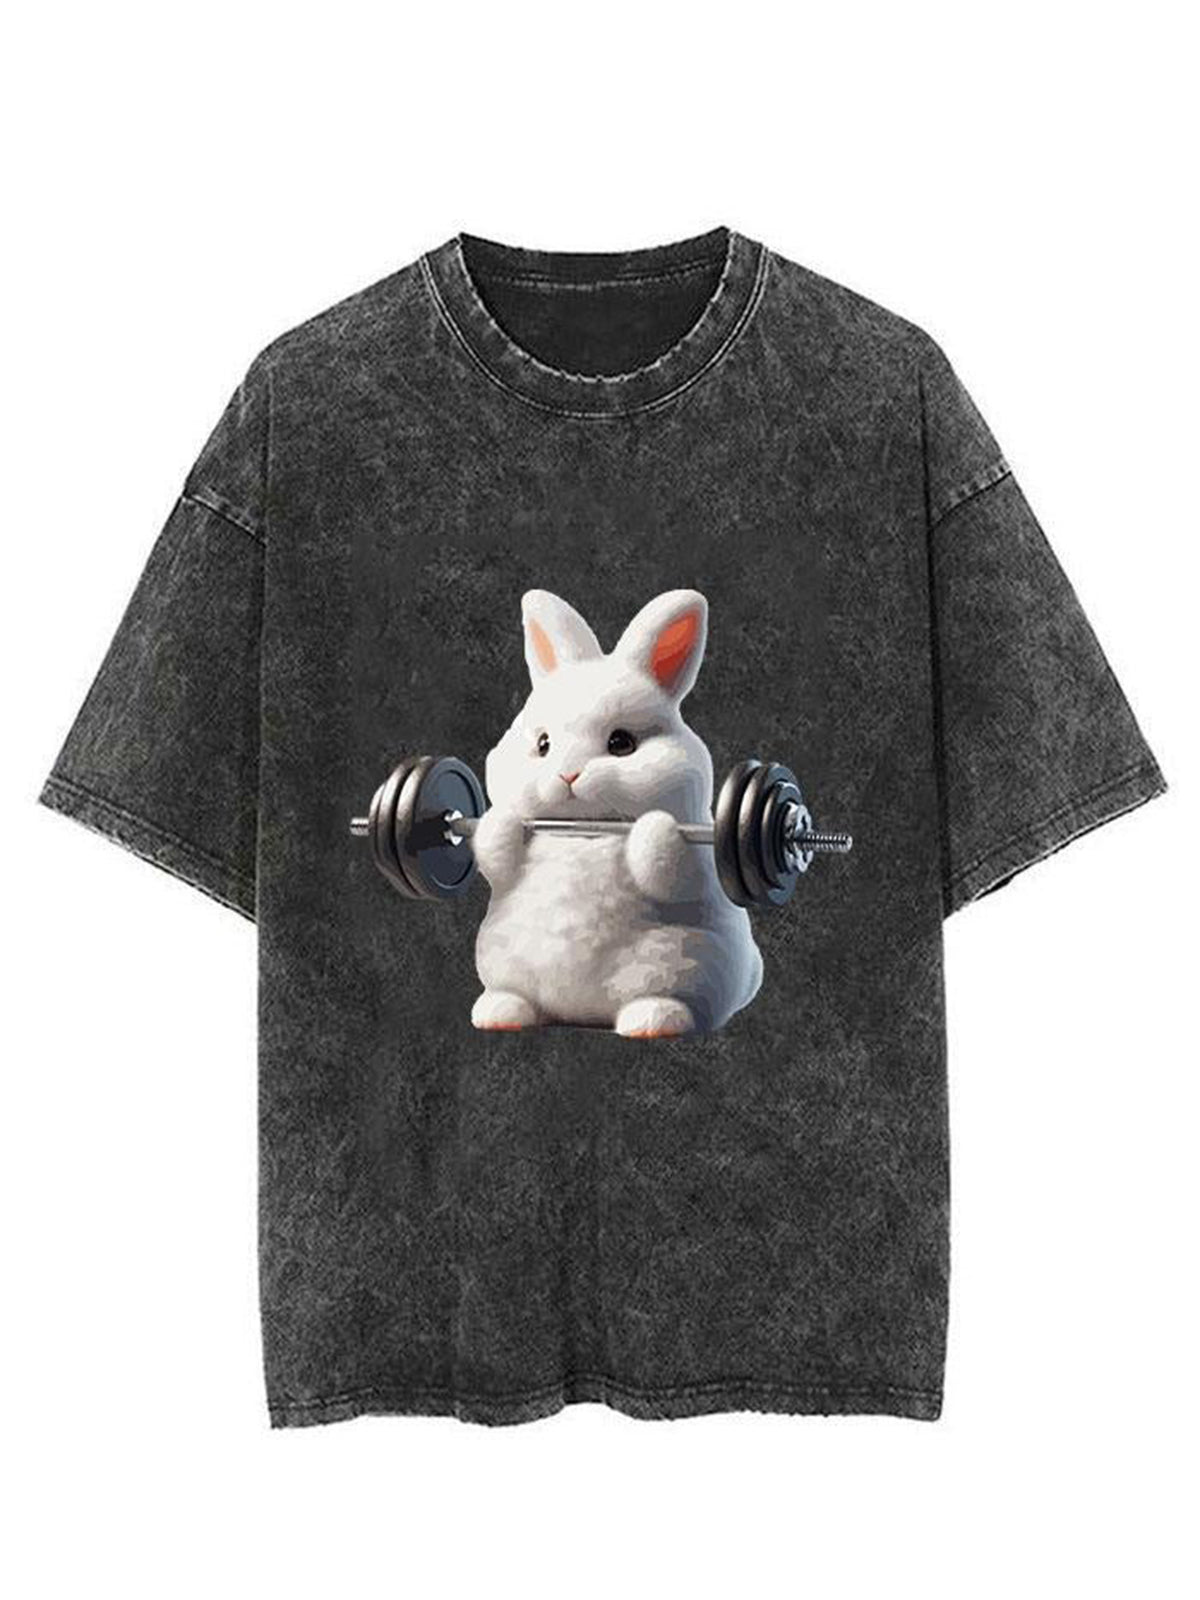 Boxing Rabbit Unisex Short Sleeve Washed T-Shirt